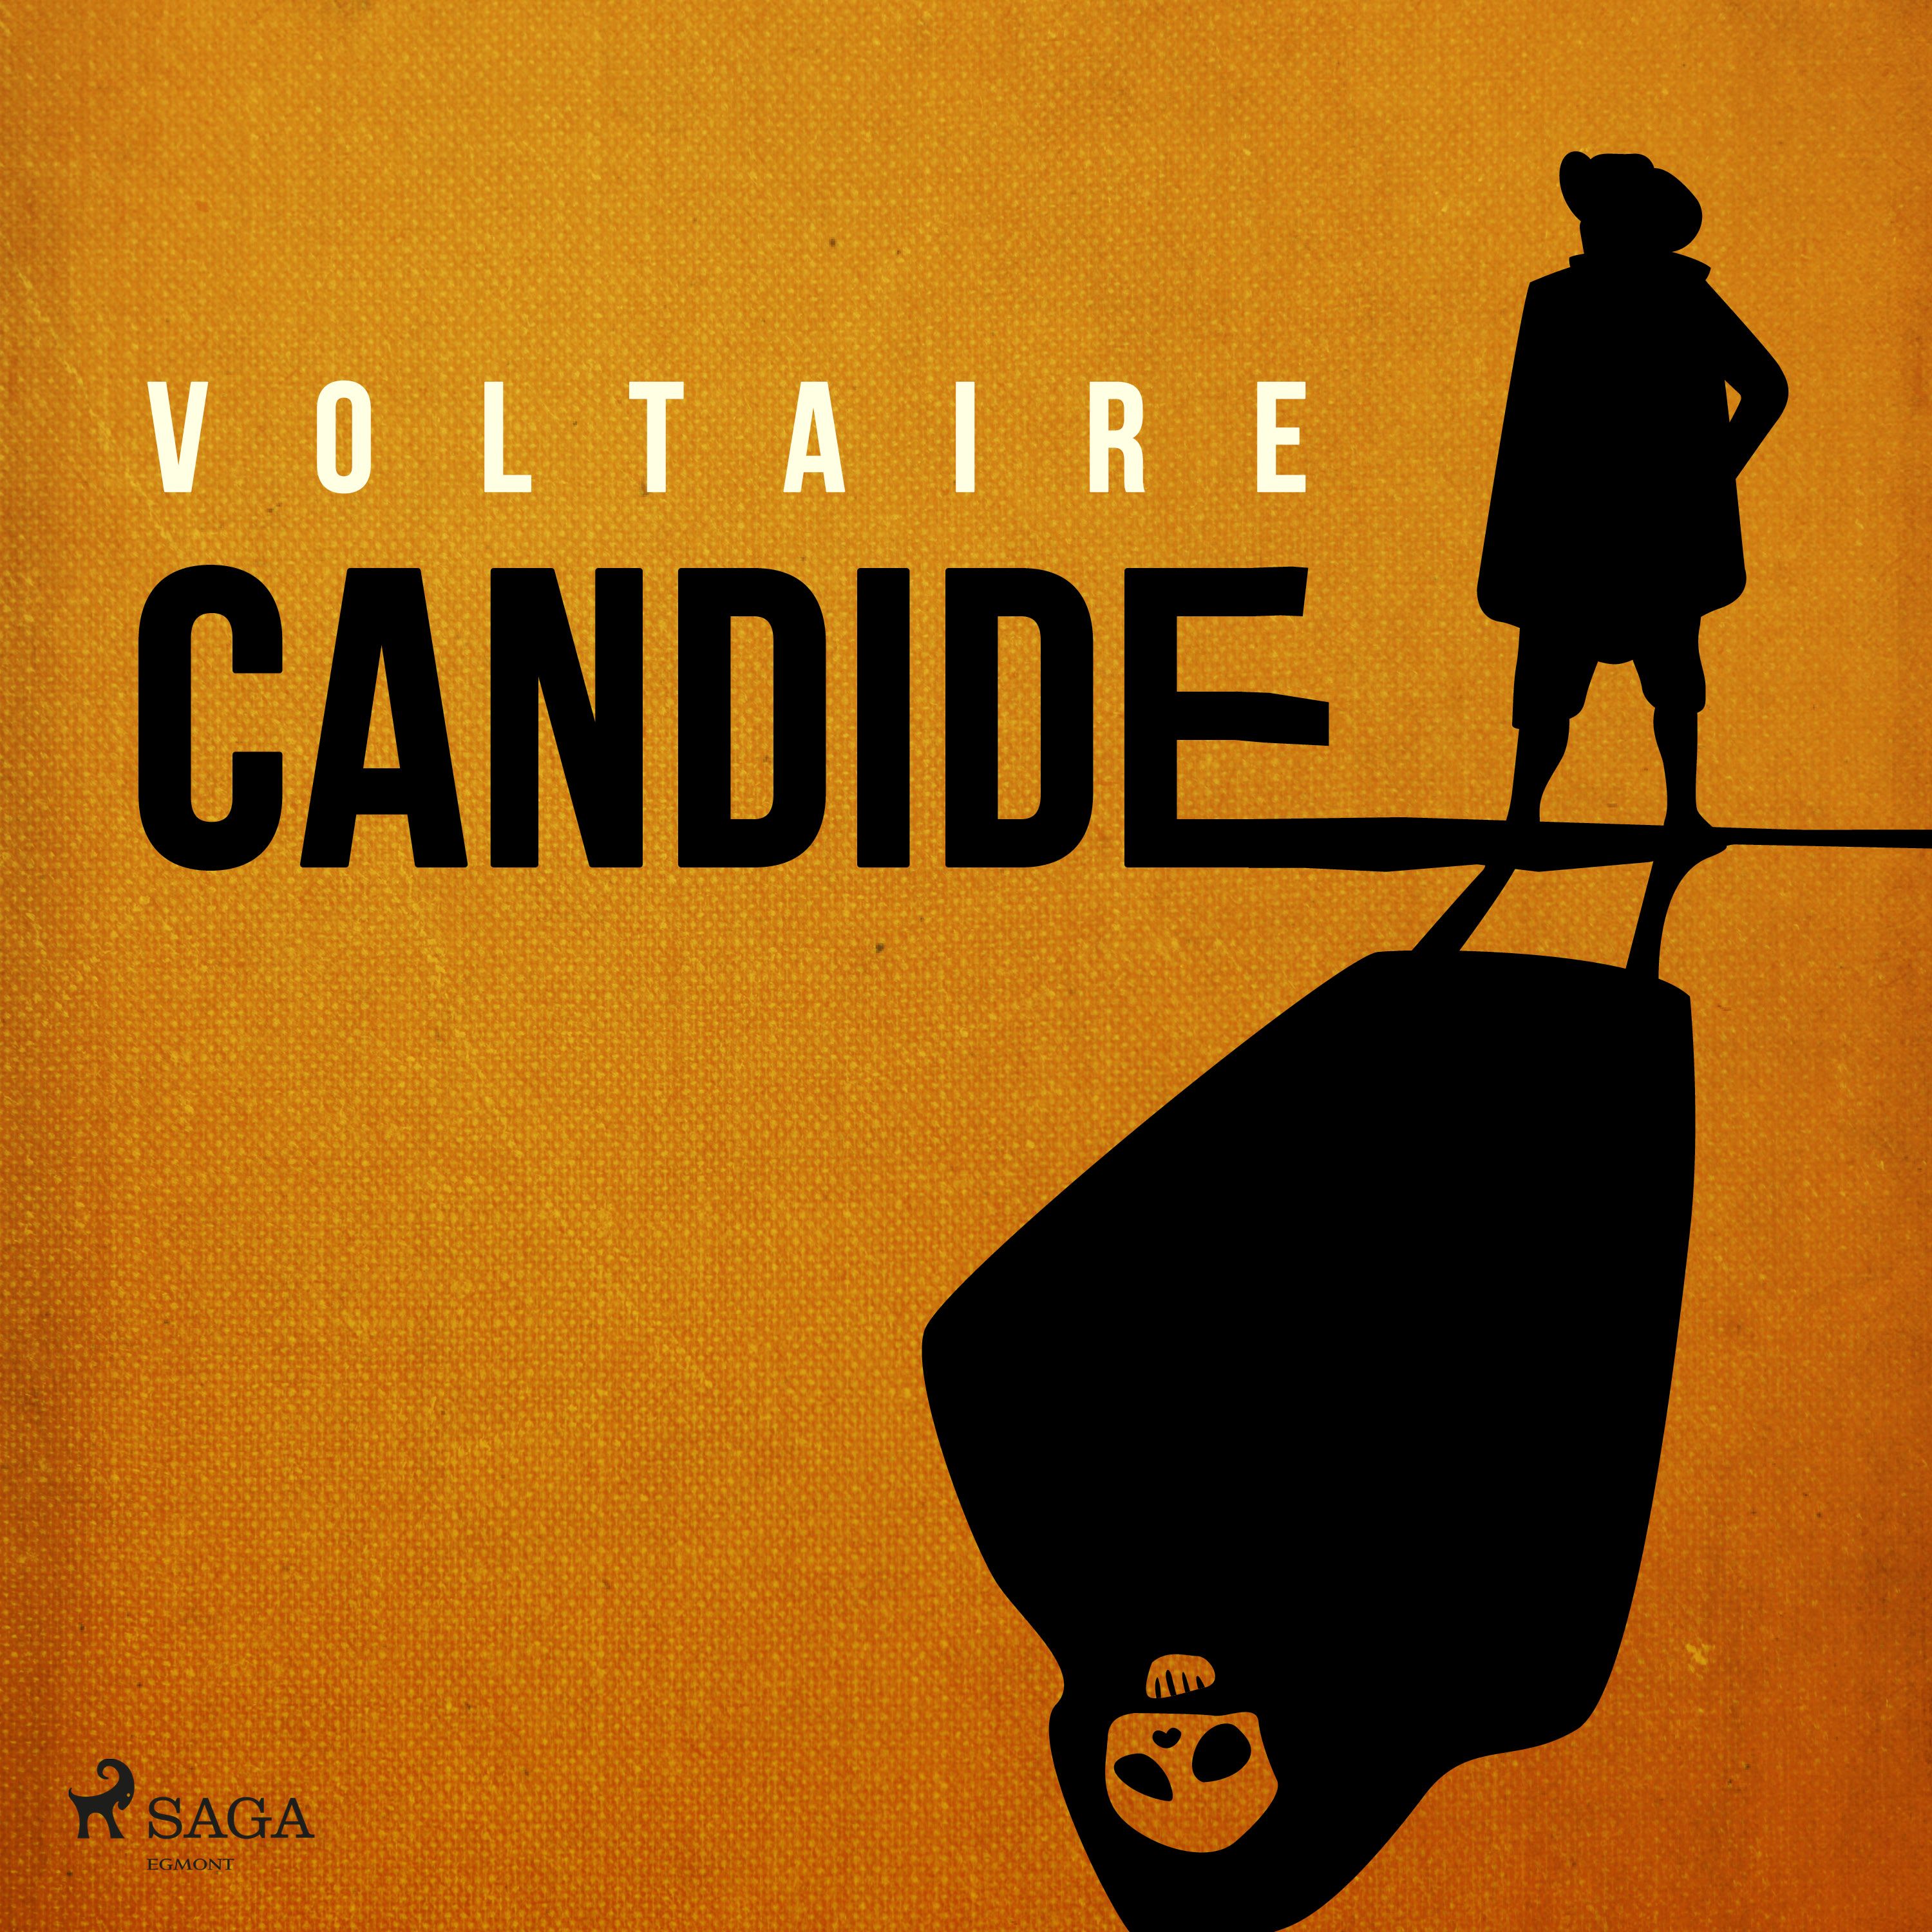 Candide, ljudbok av Voltaire